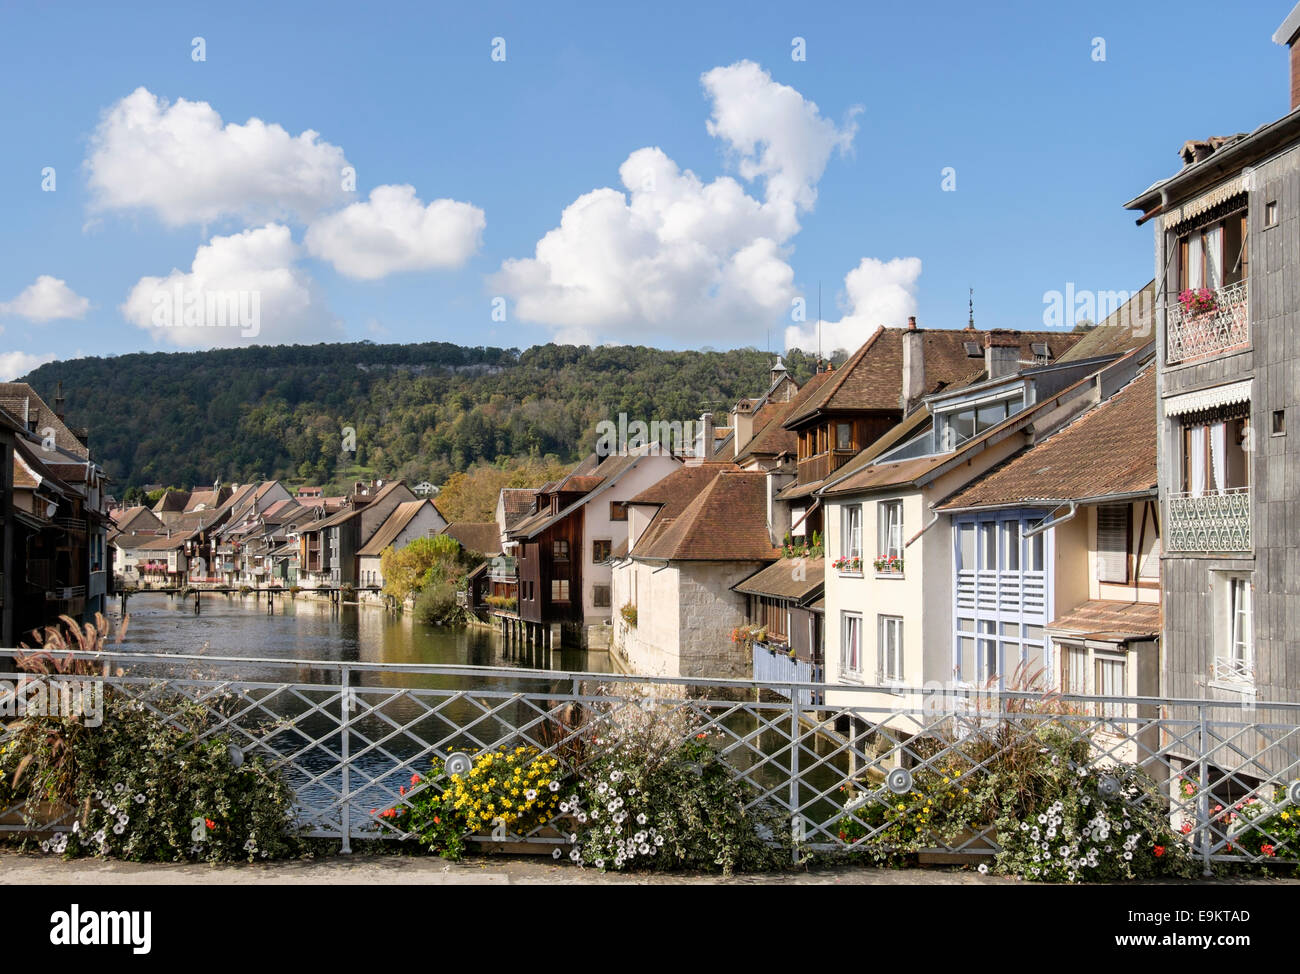 Vieilles maisons pittoresques le long de la rivière la Loue avec des fleurs sur le pont à Ornans, Doubs, Franche Comte, France, Europe Banque D'Images